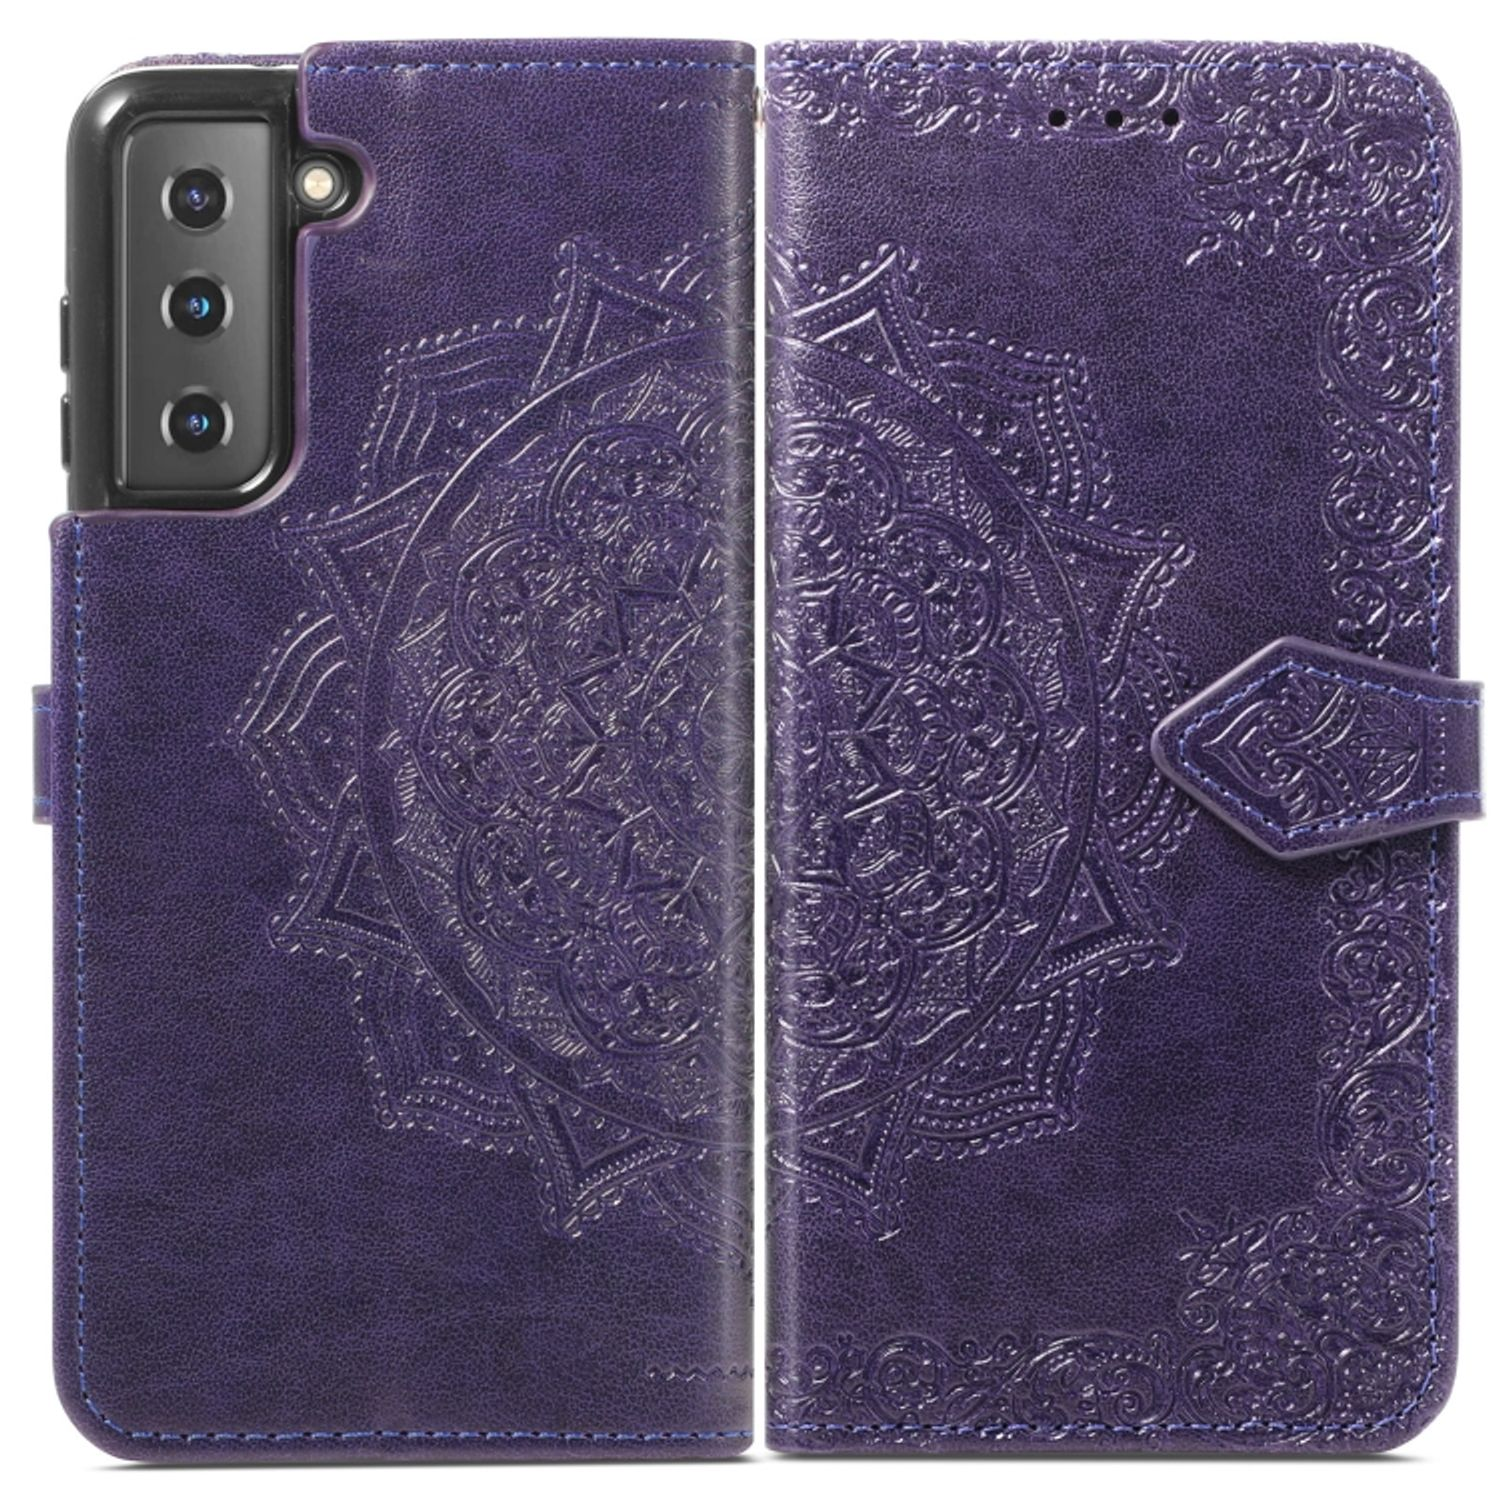 S22 Case, Bookcover, Violett DESIGN 5G, Galaxy Book KÖNIG Samsung, Plus